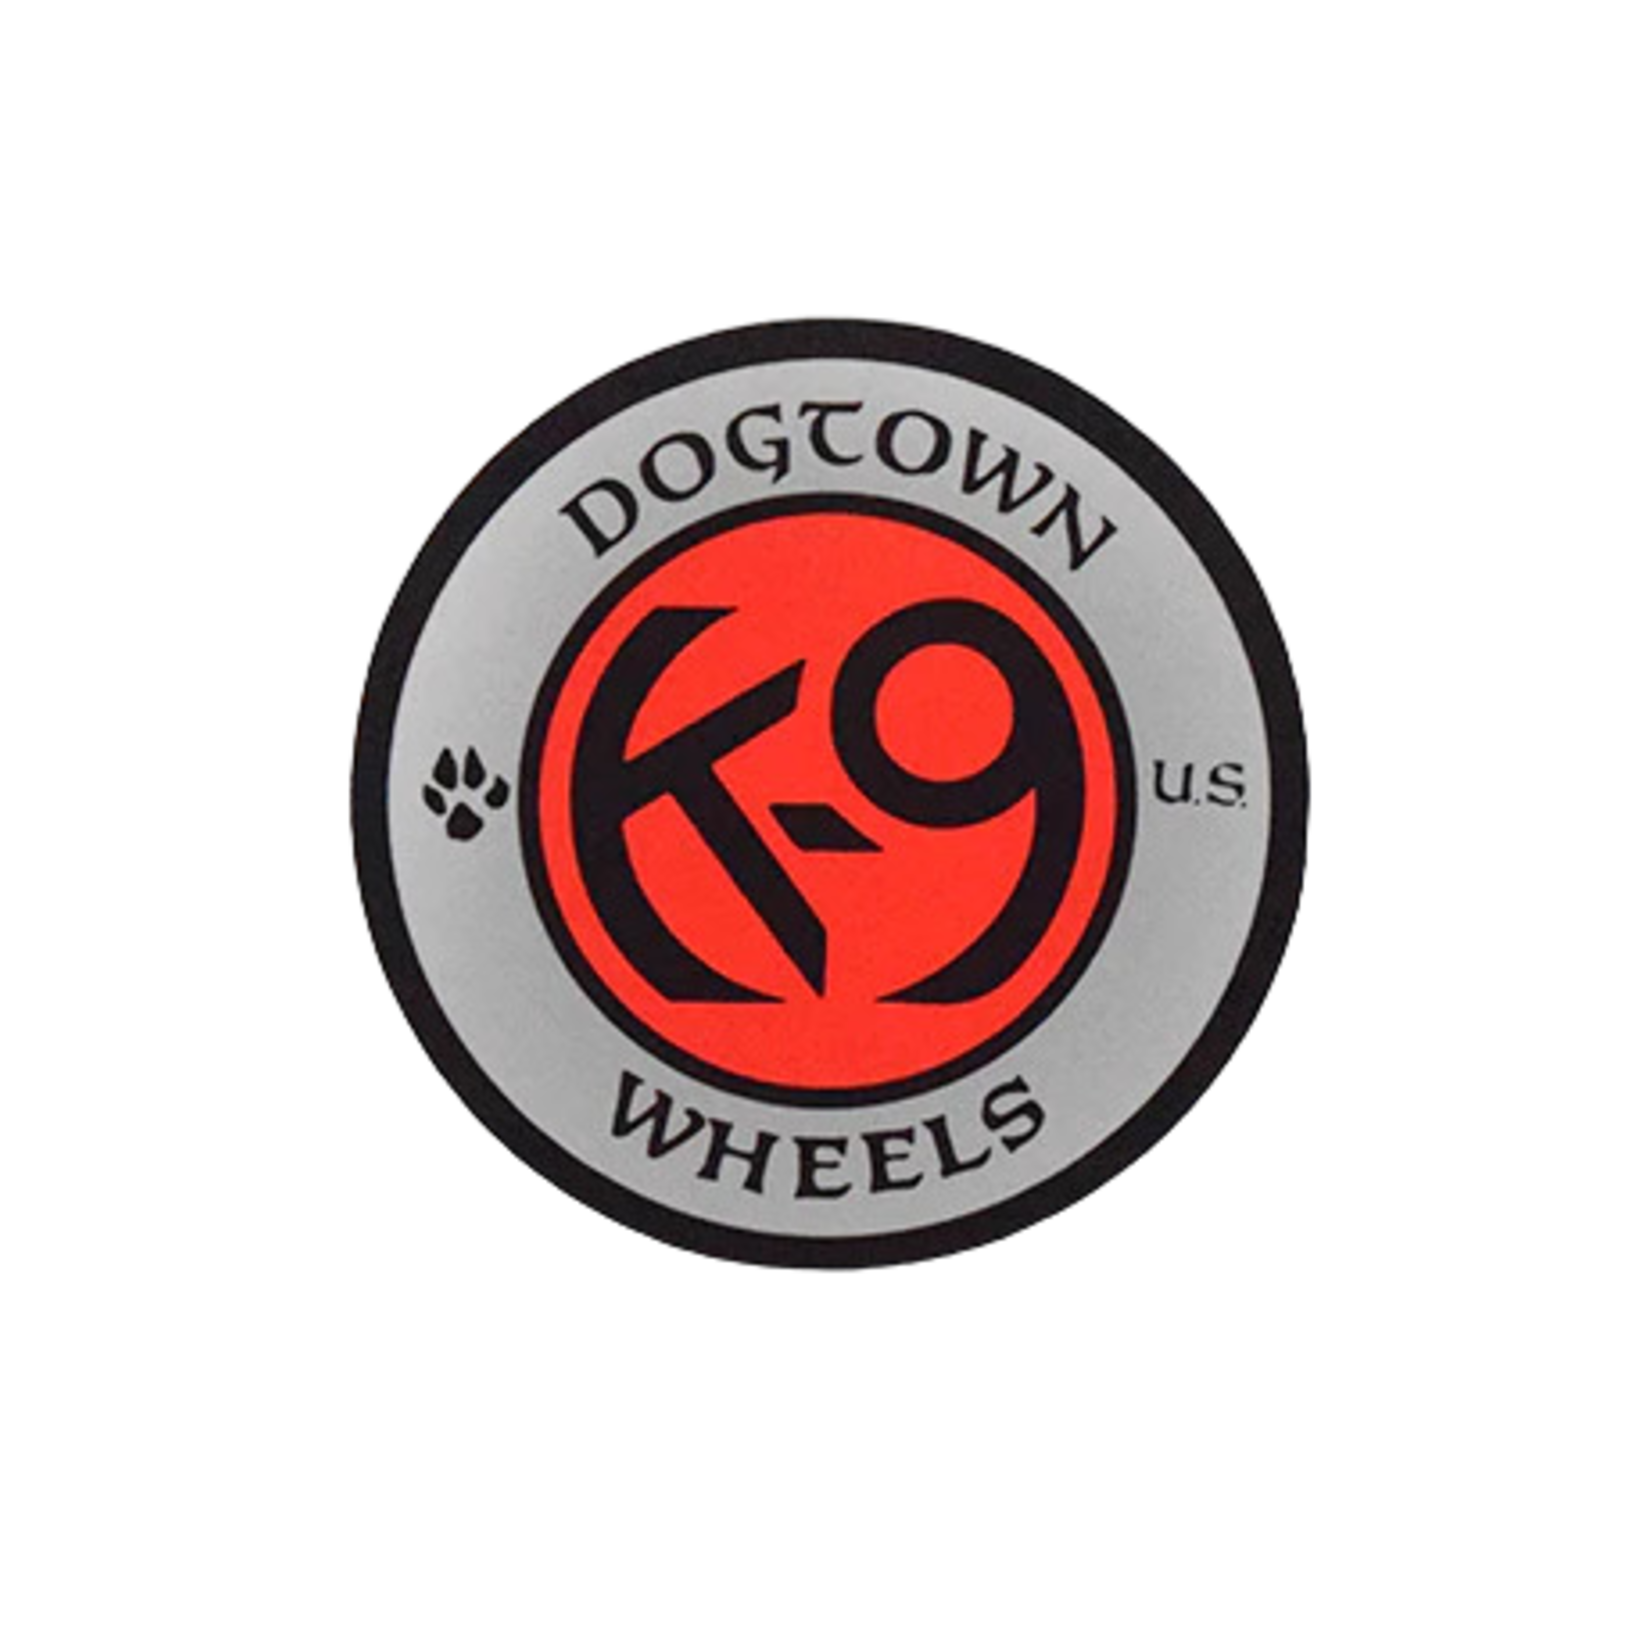 Dogtown Dogtown K-9 Wheels Sticker - 4" - Asst'd Colors